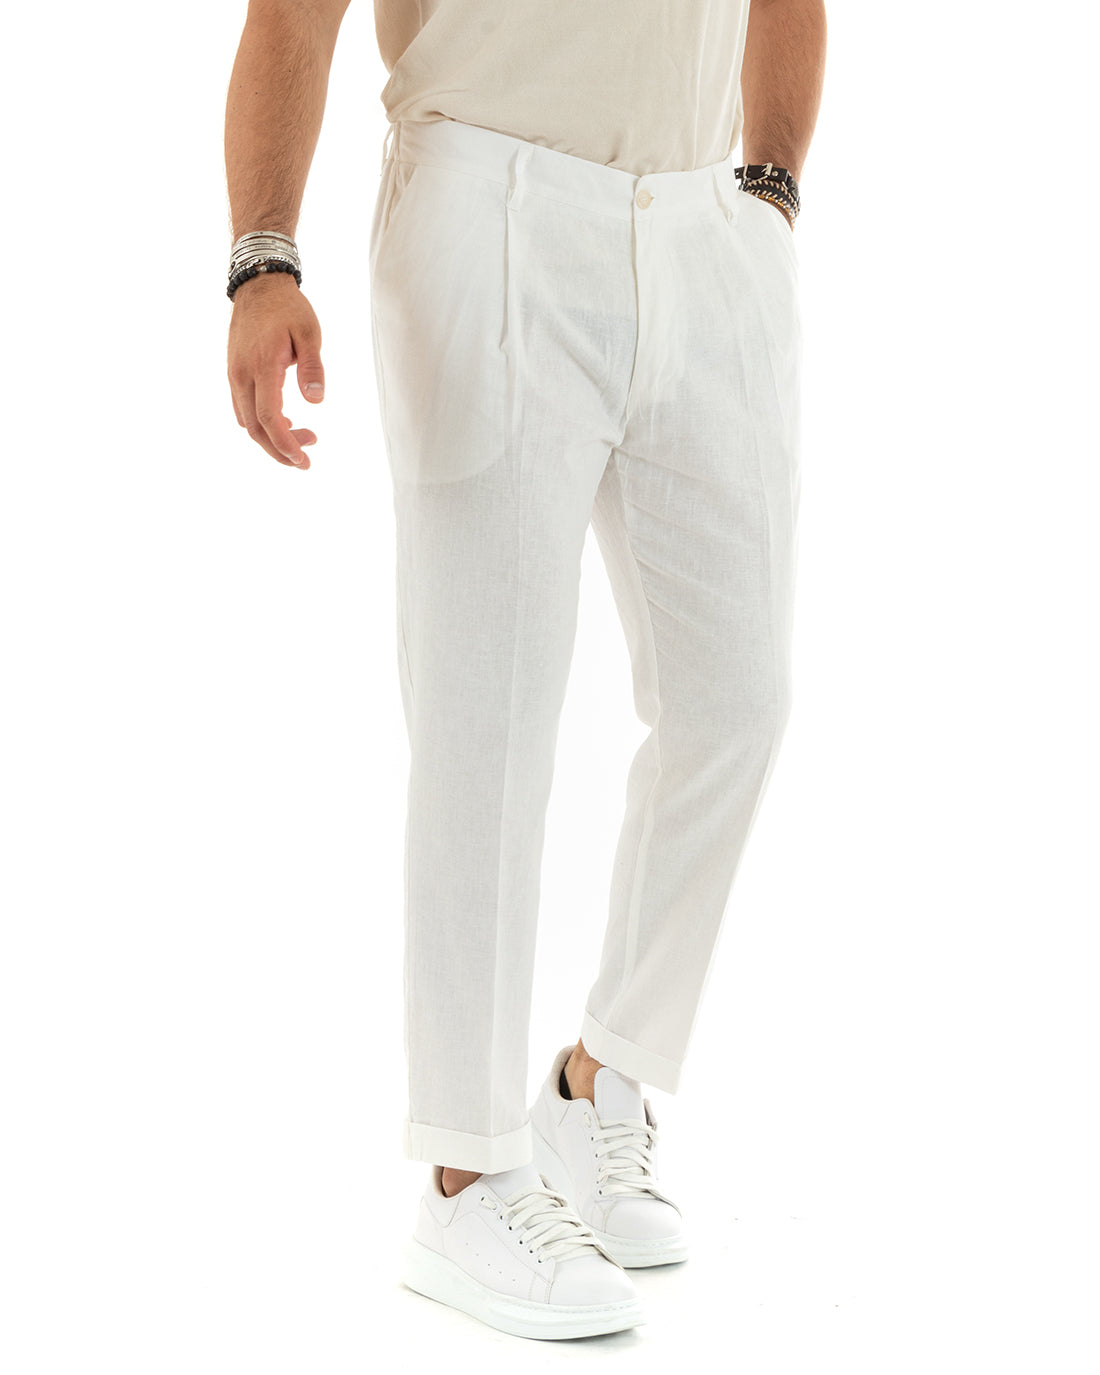 Men's Suit Linen Suit Saharan Jacket Solid Color Casual White Trousers GIOSAL-OU2338A